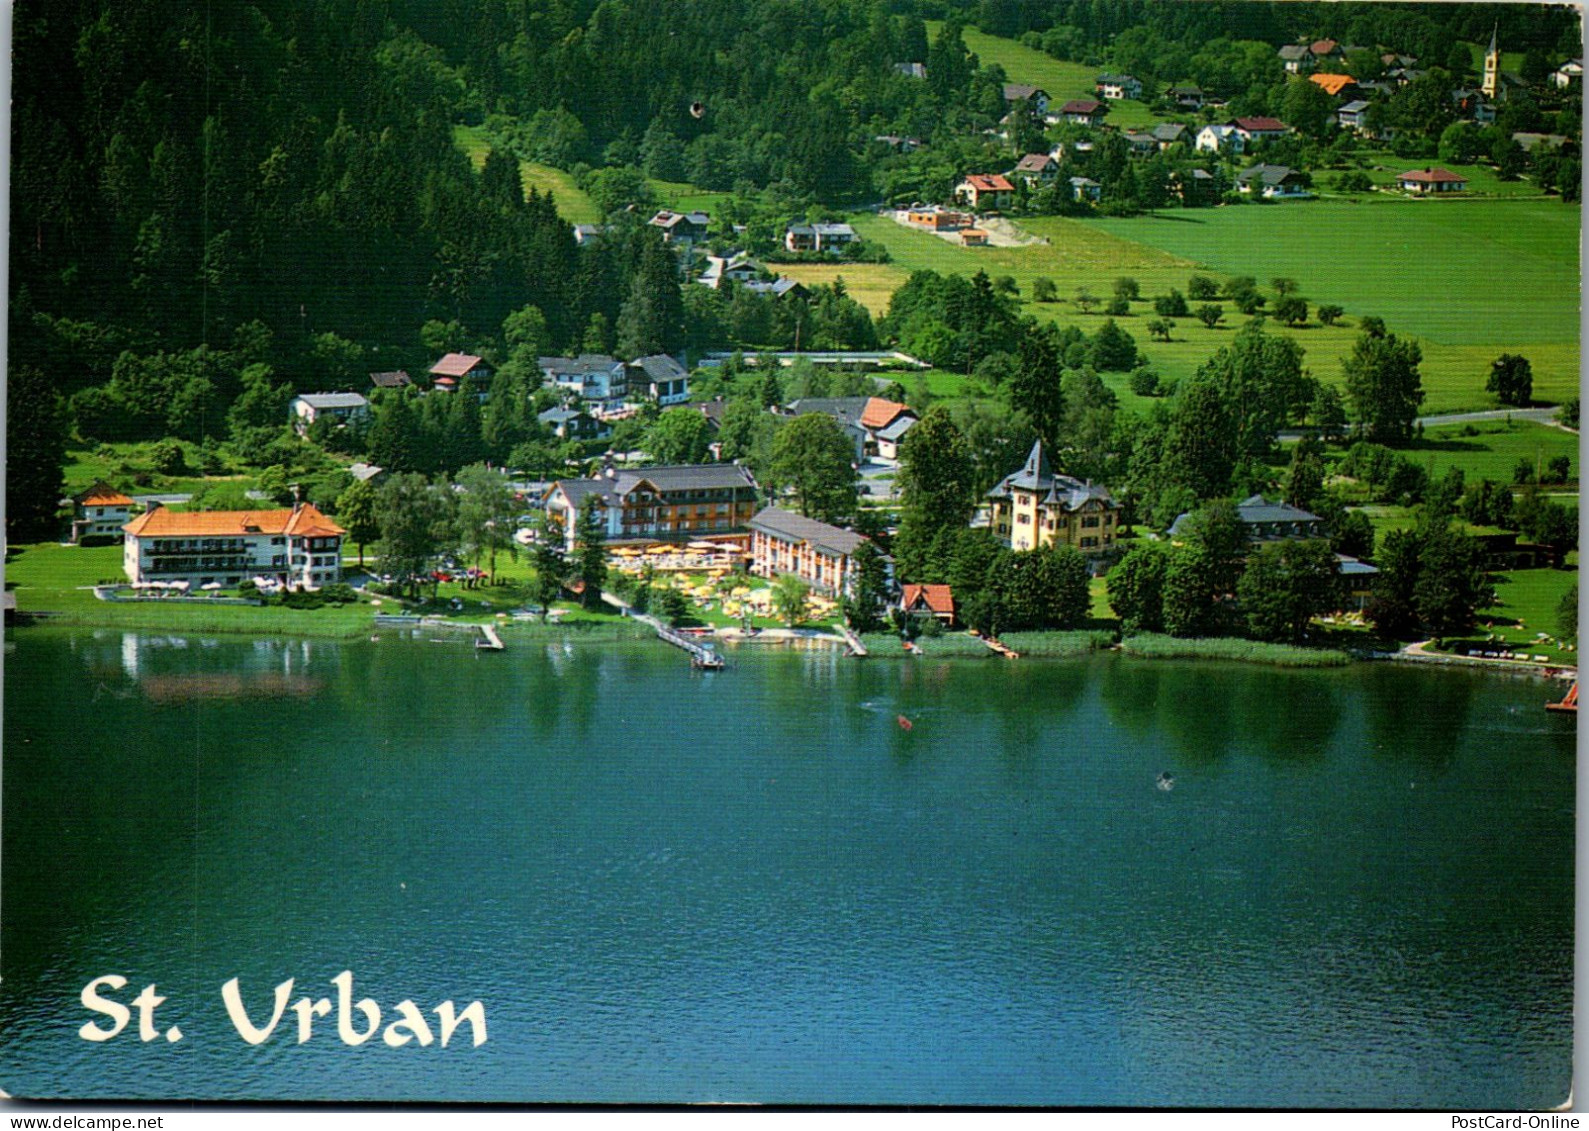 49337 - Kärnten - St. Urban , Bodensdorf , Ossiacher See - Gelaufen 1995 - Feldkirchen In Kärnten